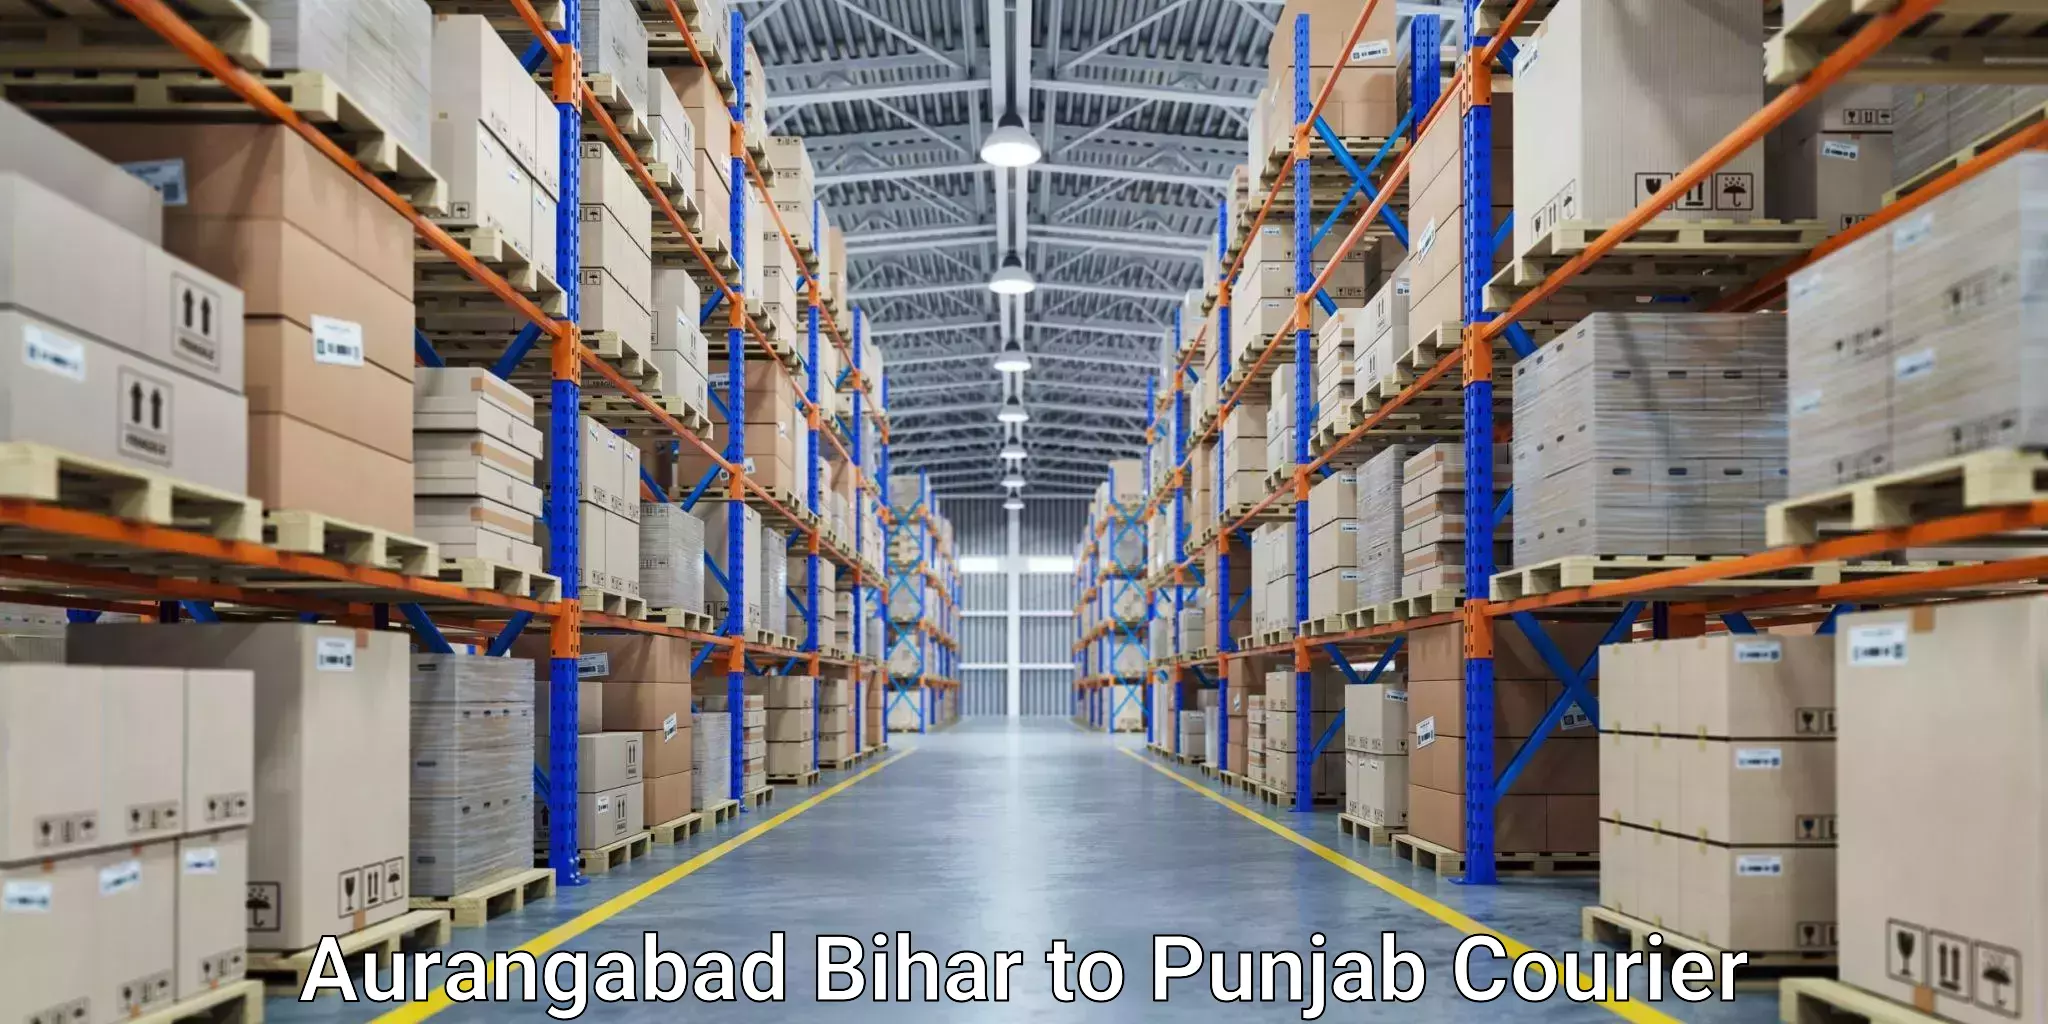 Urban courier service Aurangabad Bihar to Bhadaur